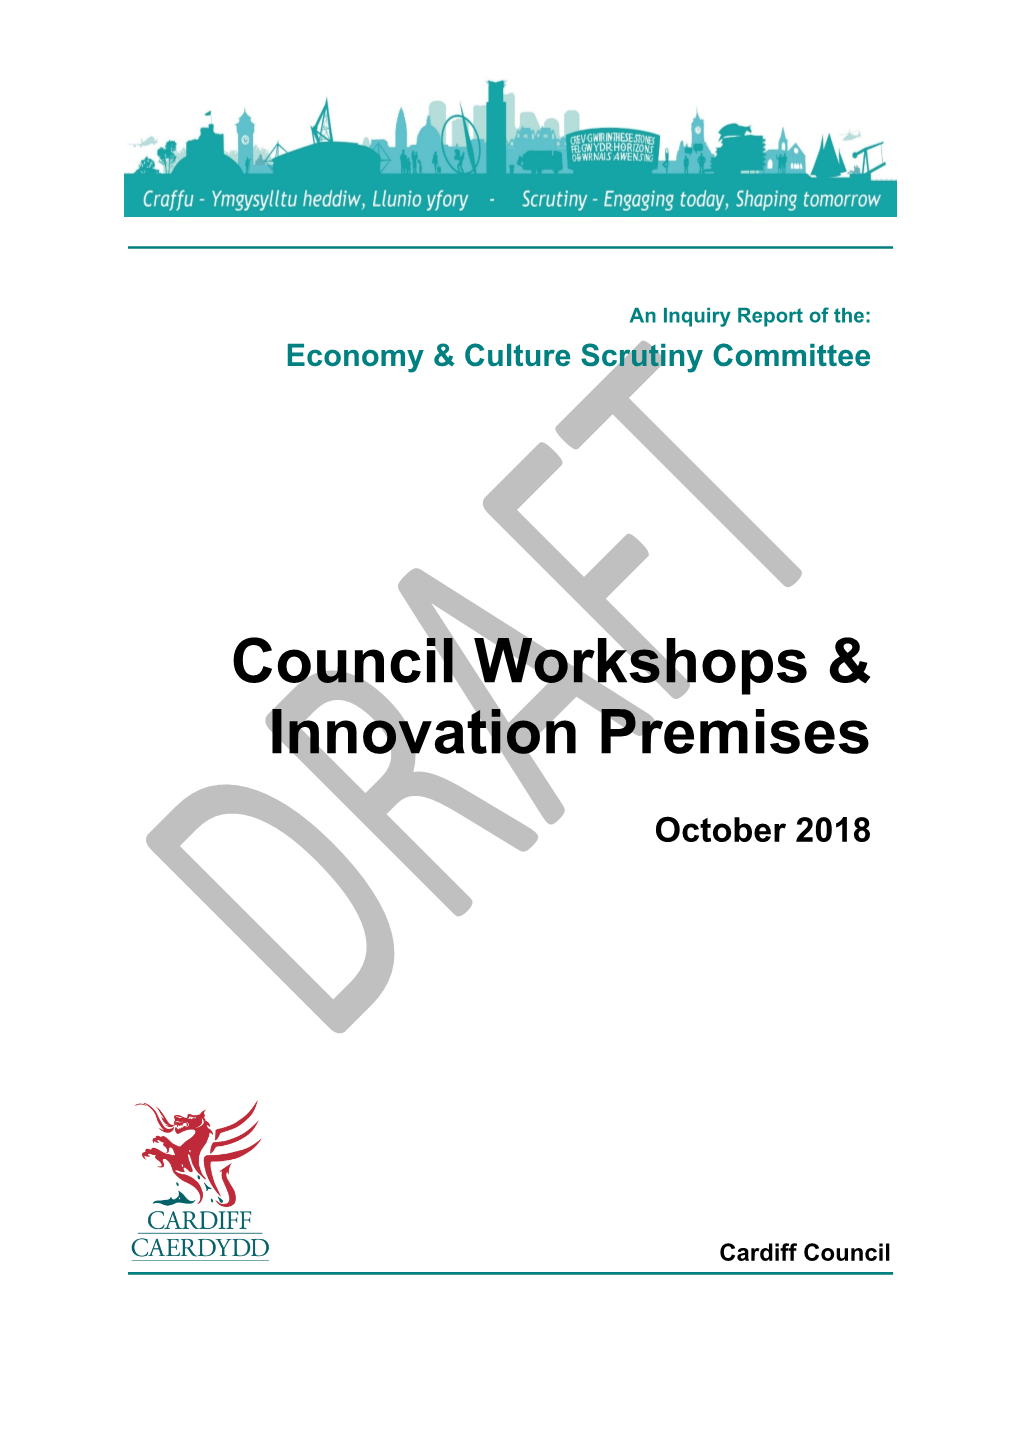 Council Workshops & Innovation Premises